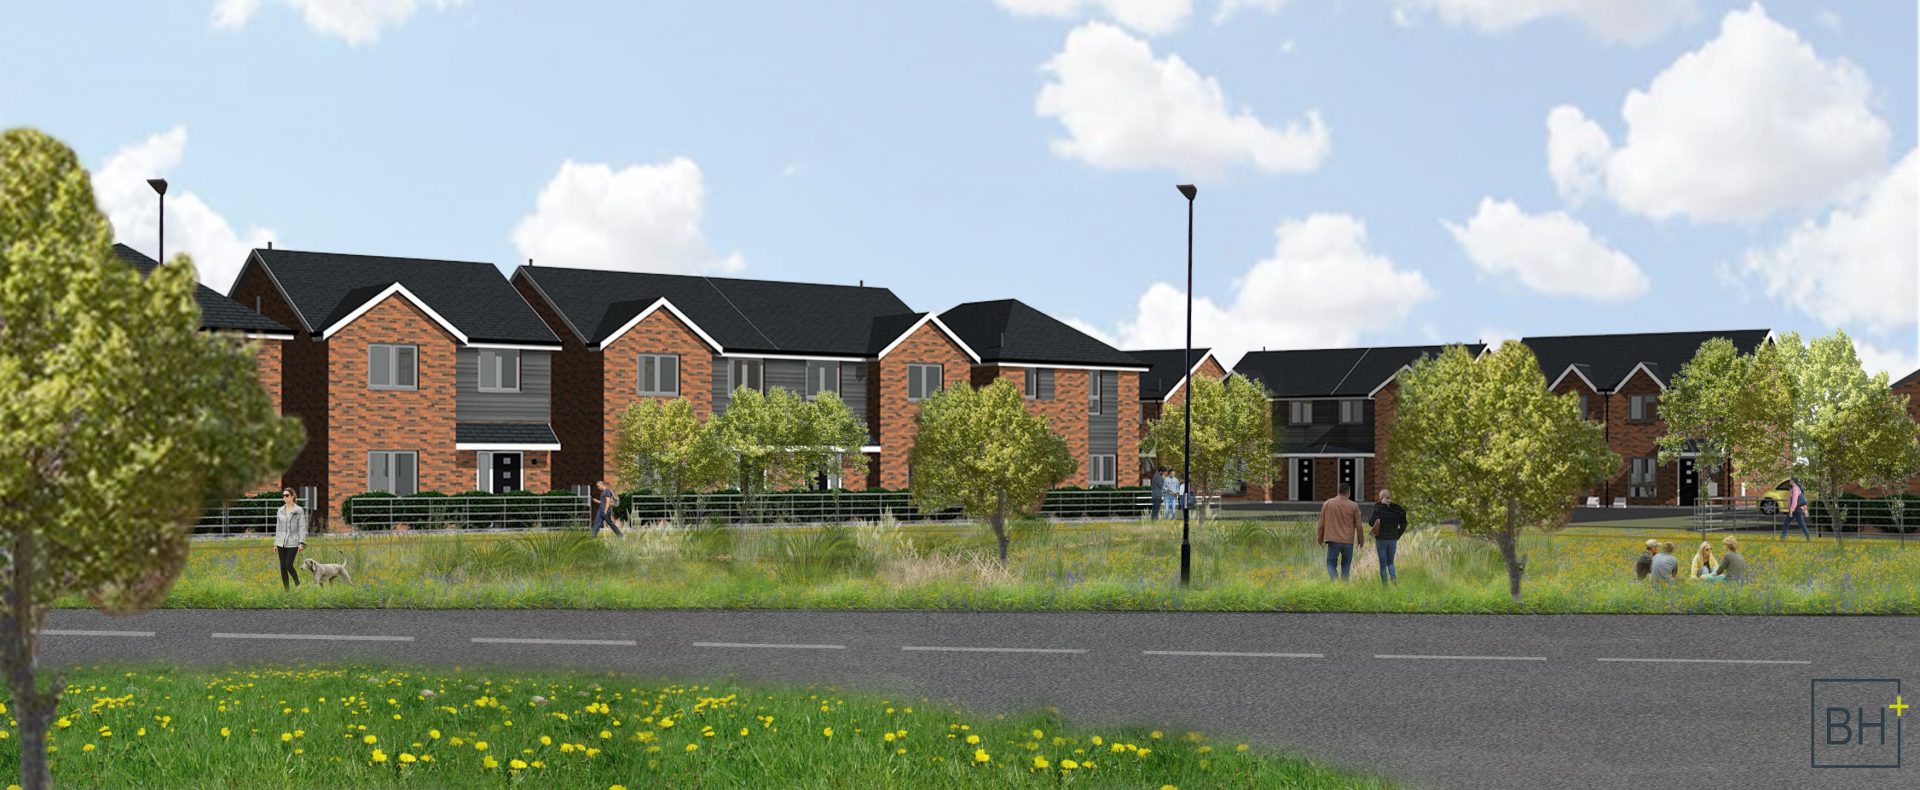 Adderstone Living secures planning permission for Sunderland affordable homes